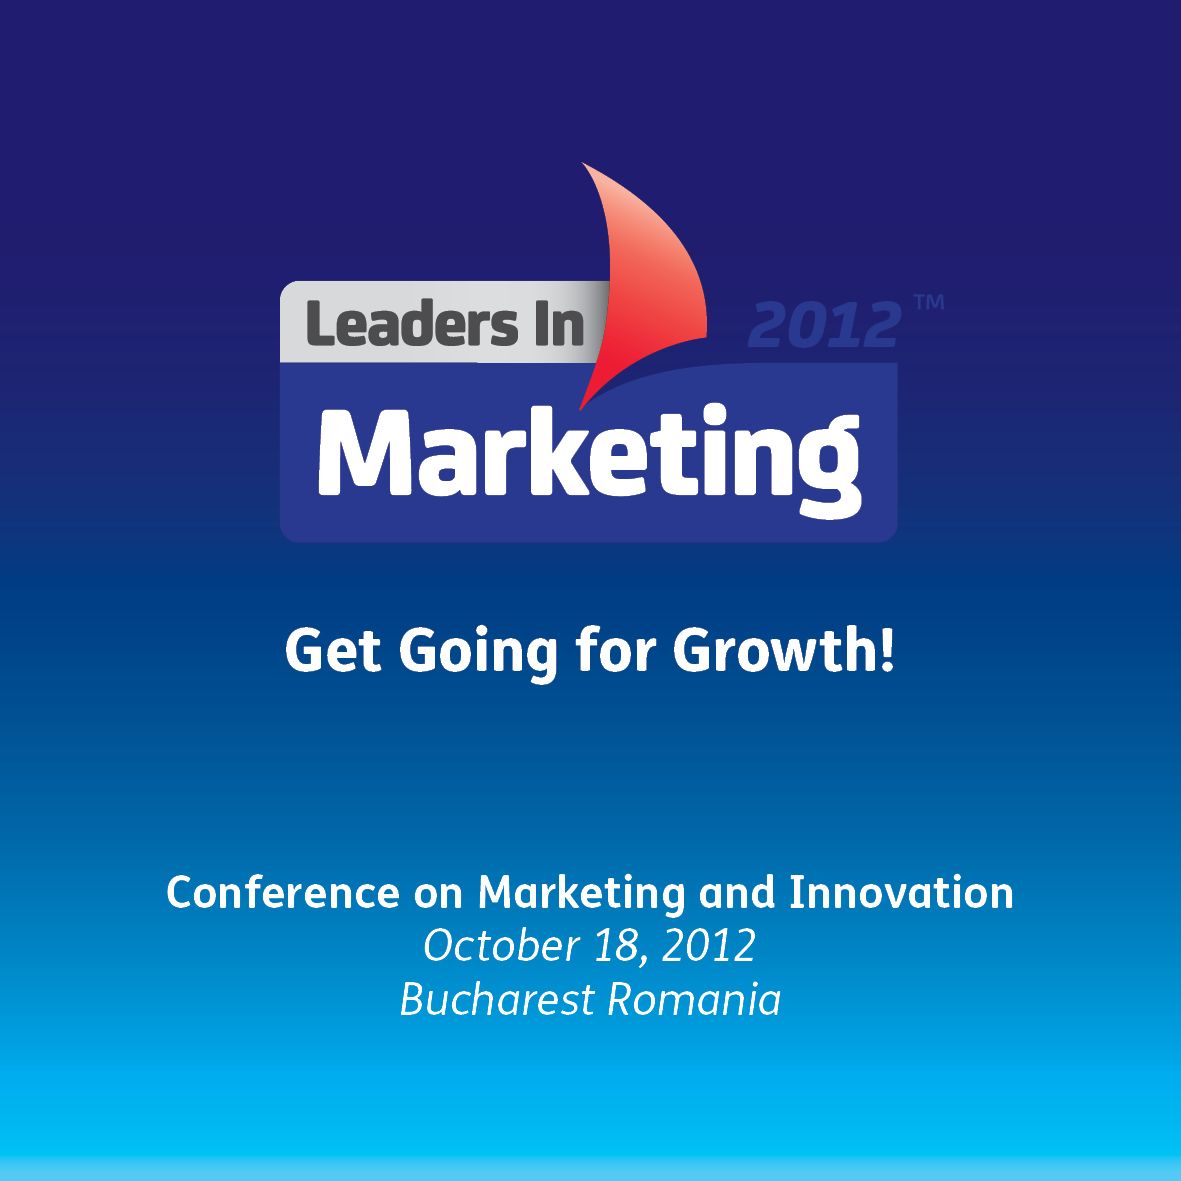 Ultima săptămână în care puteți beneficia de un discount de 47% pentru înscrirea la conferința Leaders in Marketing